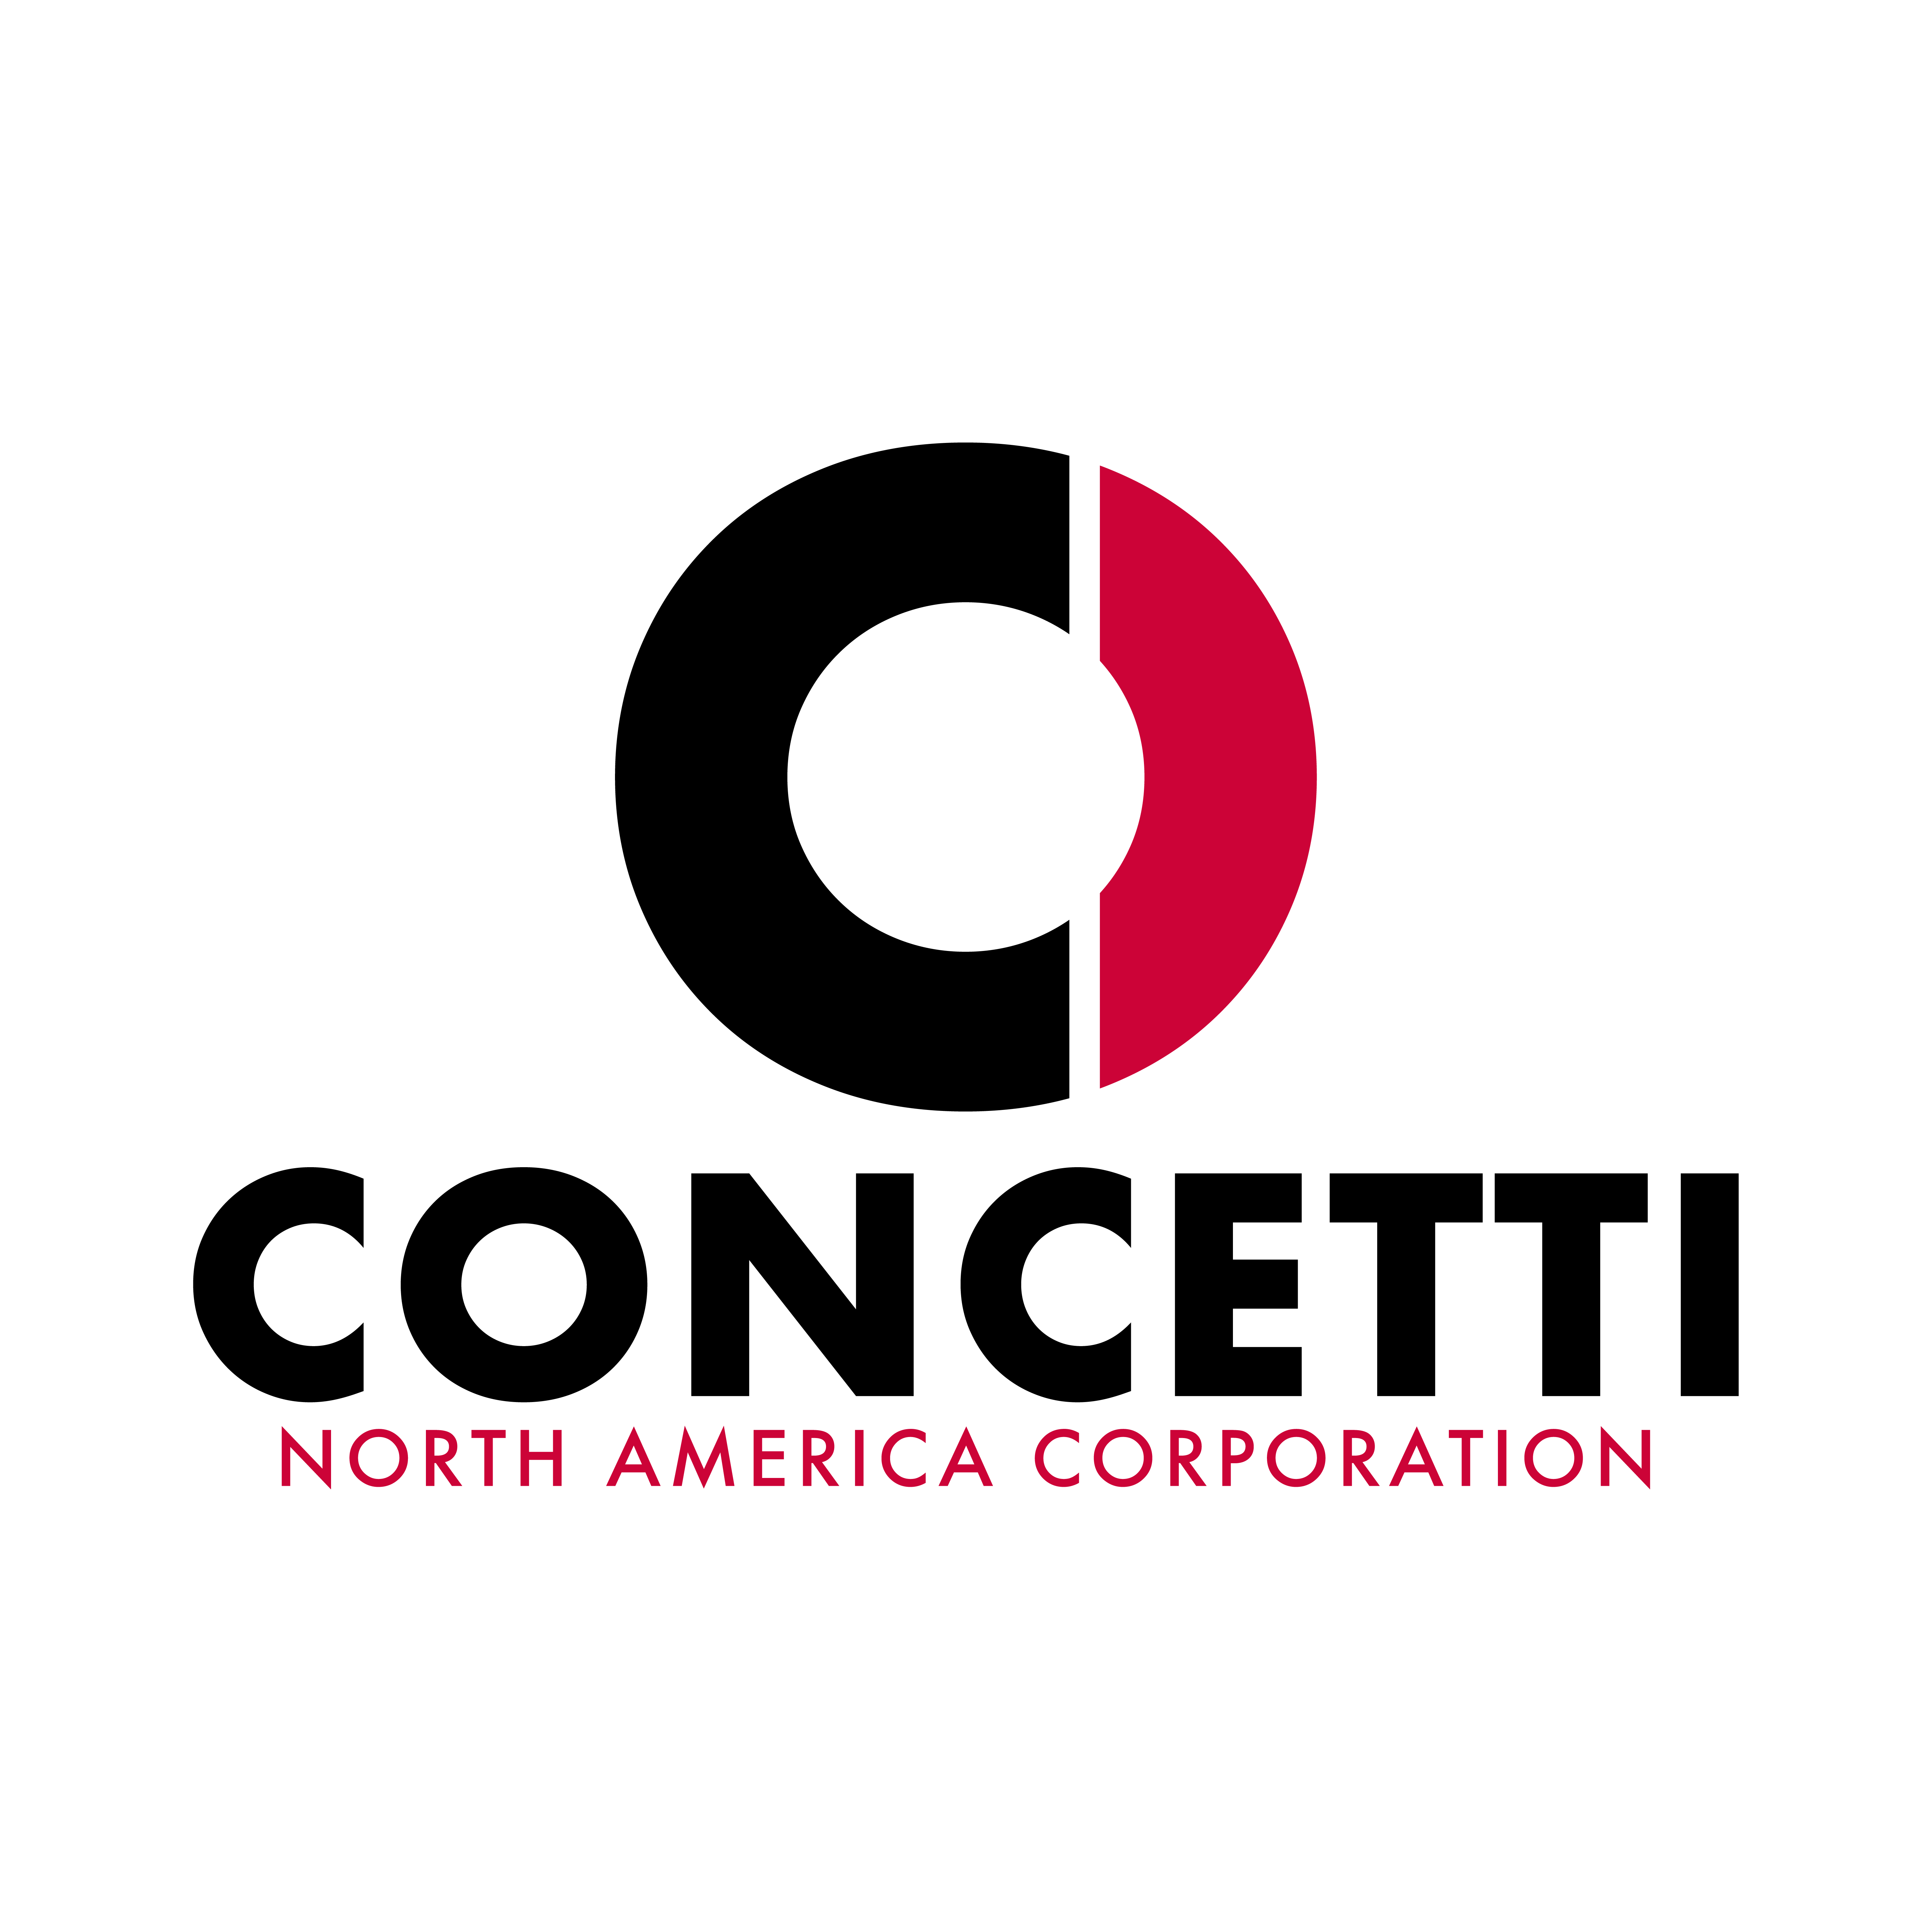 CONCETTI NORTH AMERICA Corporation